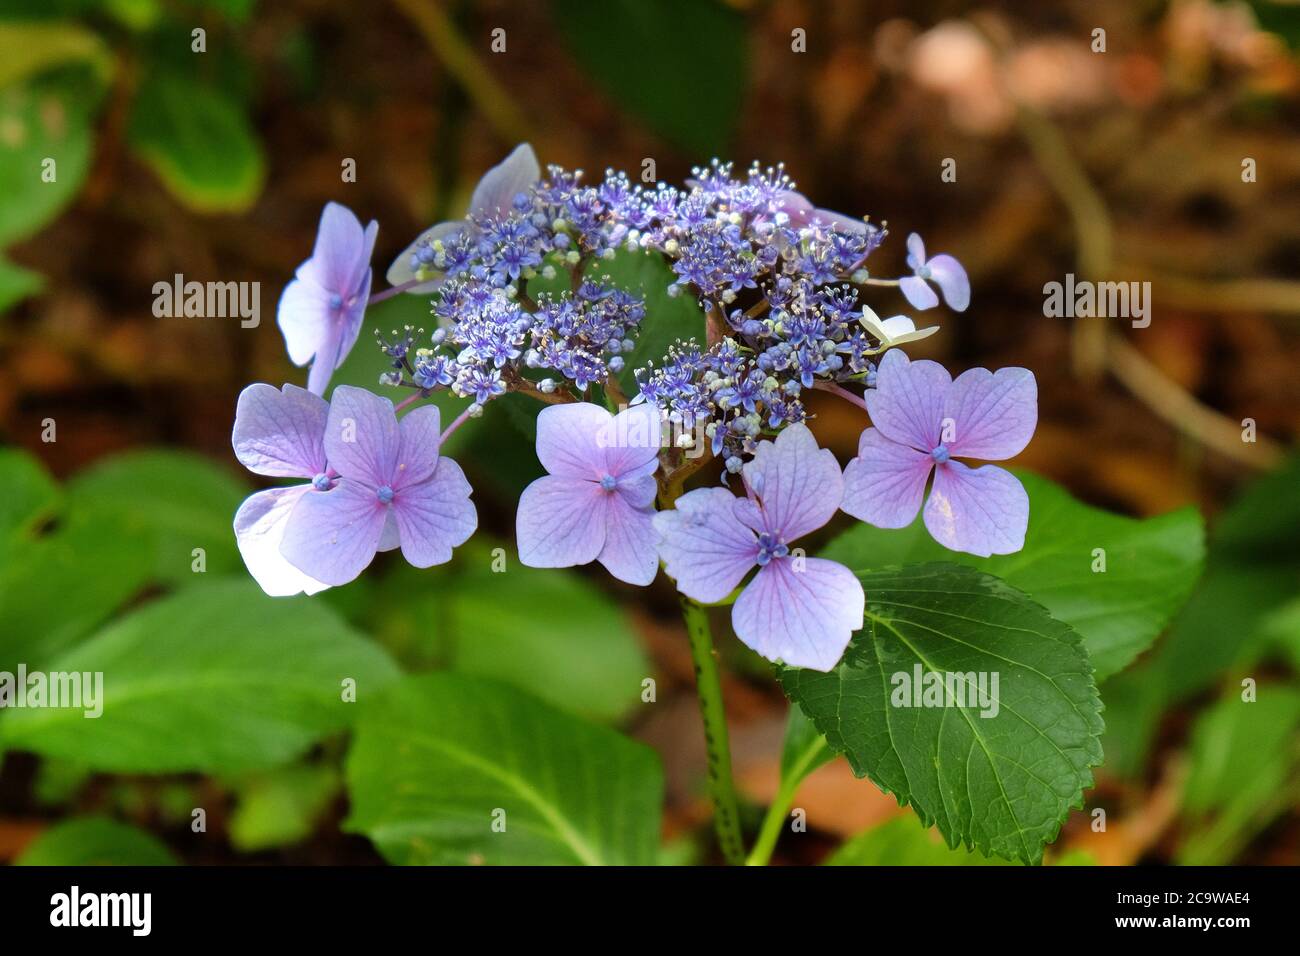 Purple lace cap Hydrangea macrophylla in flower Stock Photo